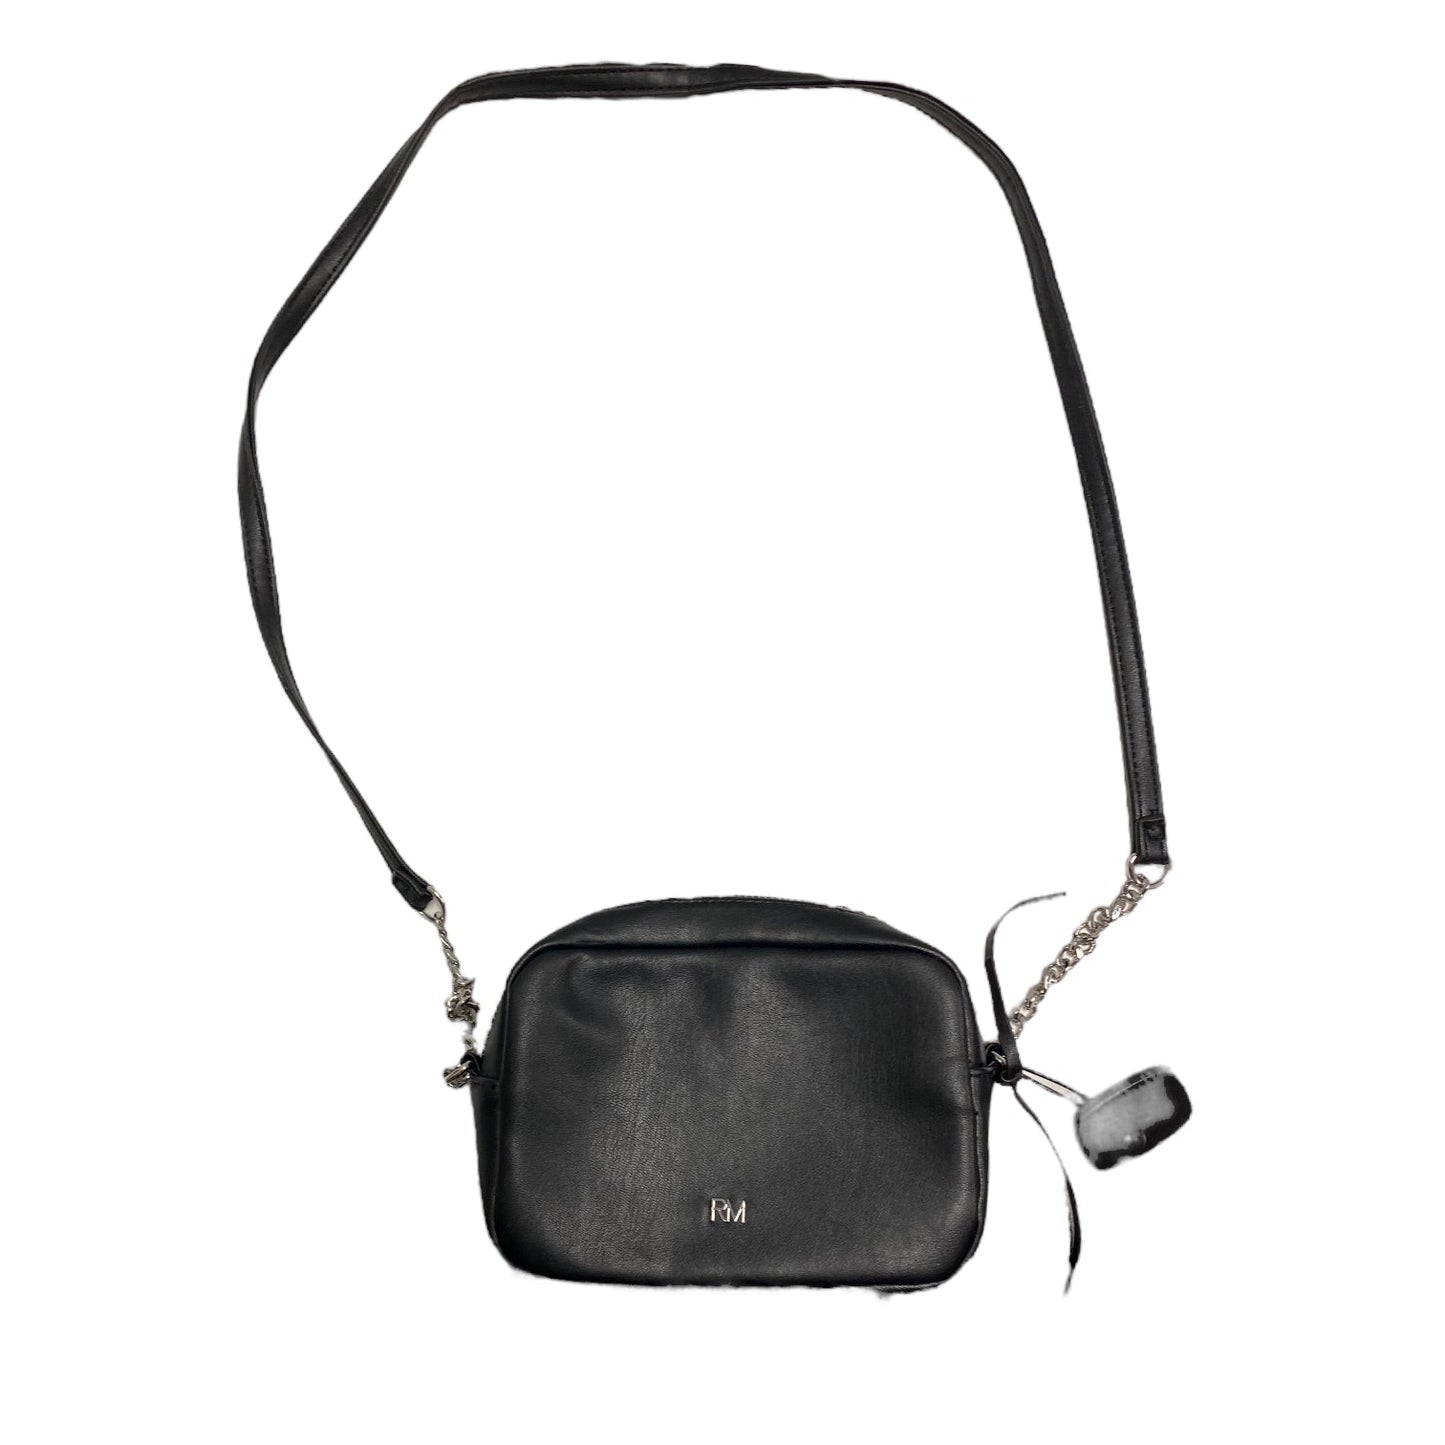 Handbag Designer By Rebecca Minkoff  Size: Small